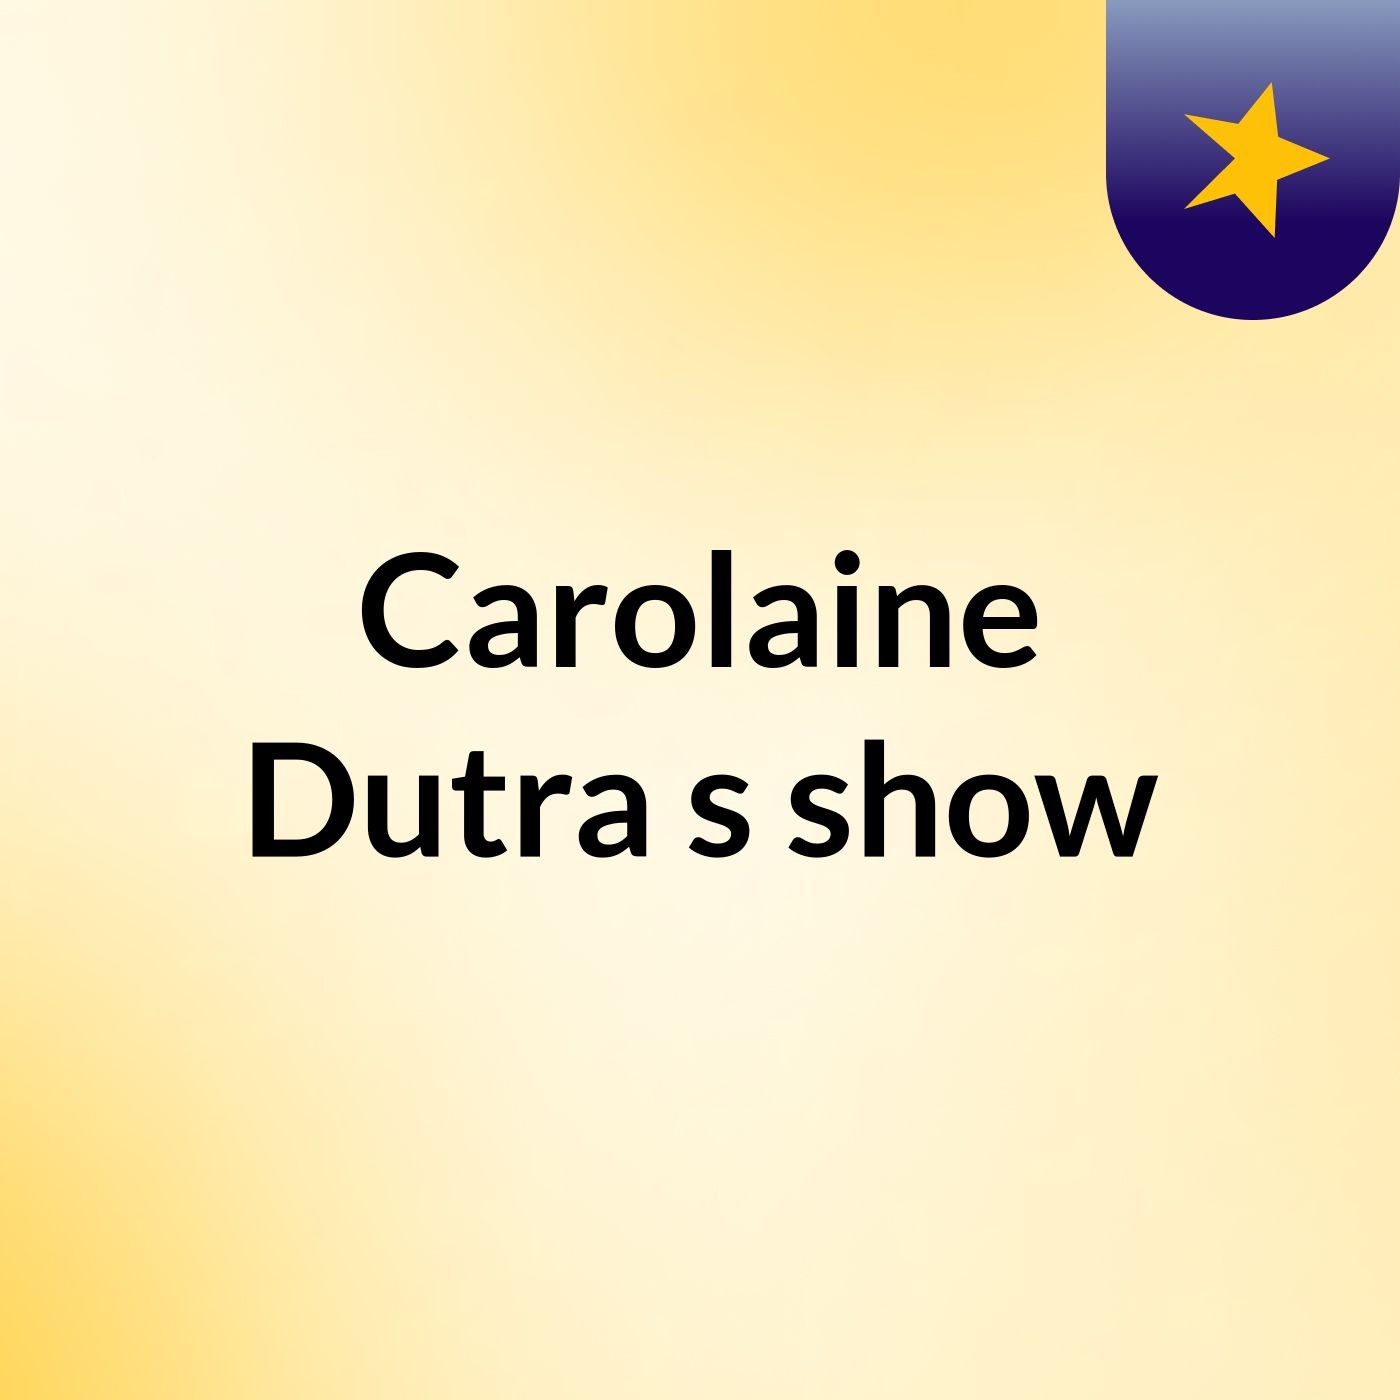 Carolaine Dutra's show